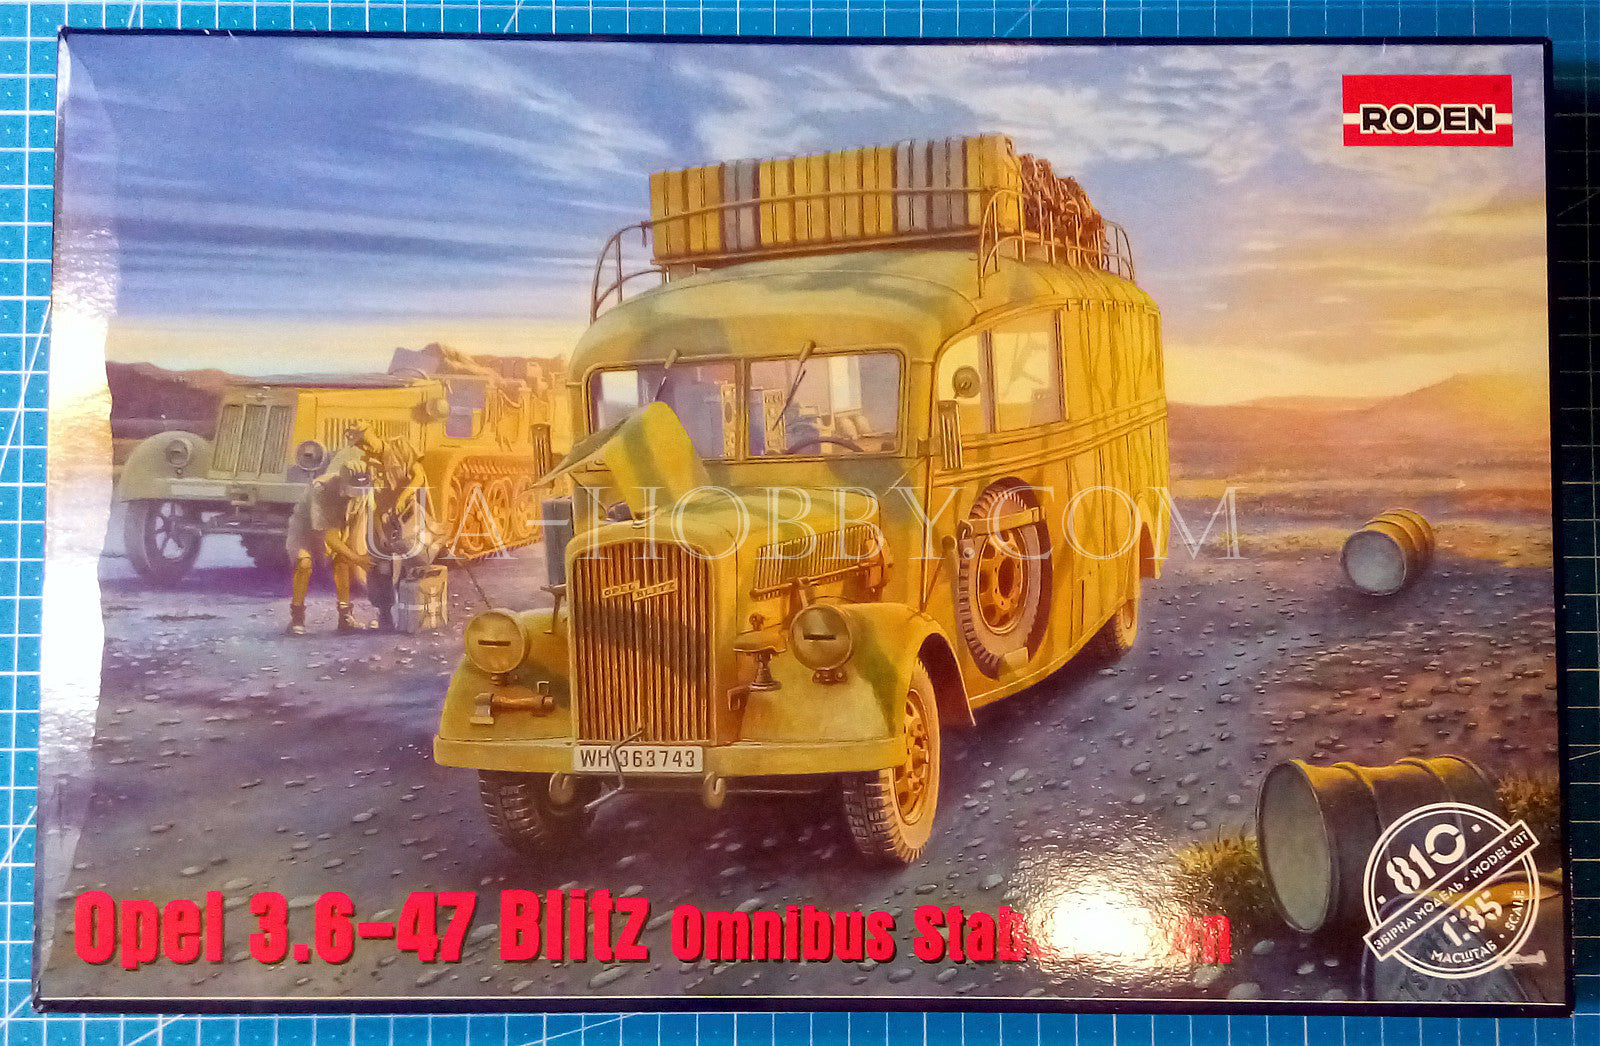 1/35 Opel 3.6-47 Omnibus Staffwagen. Roden 810